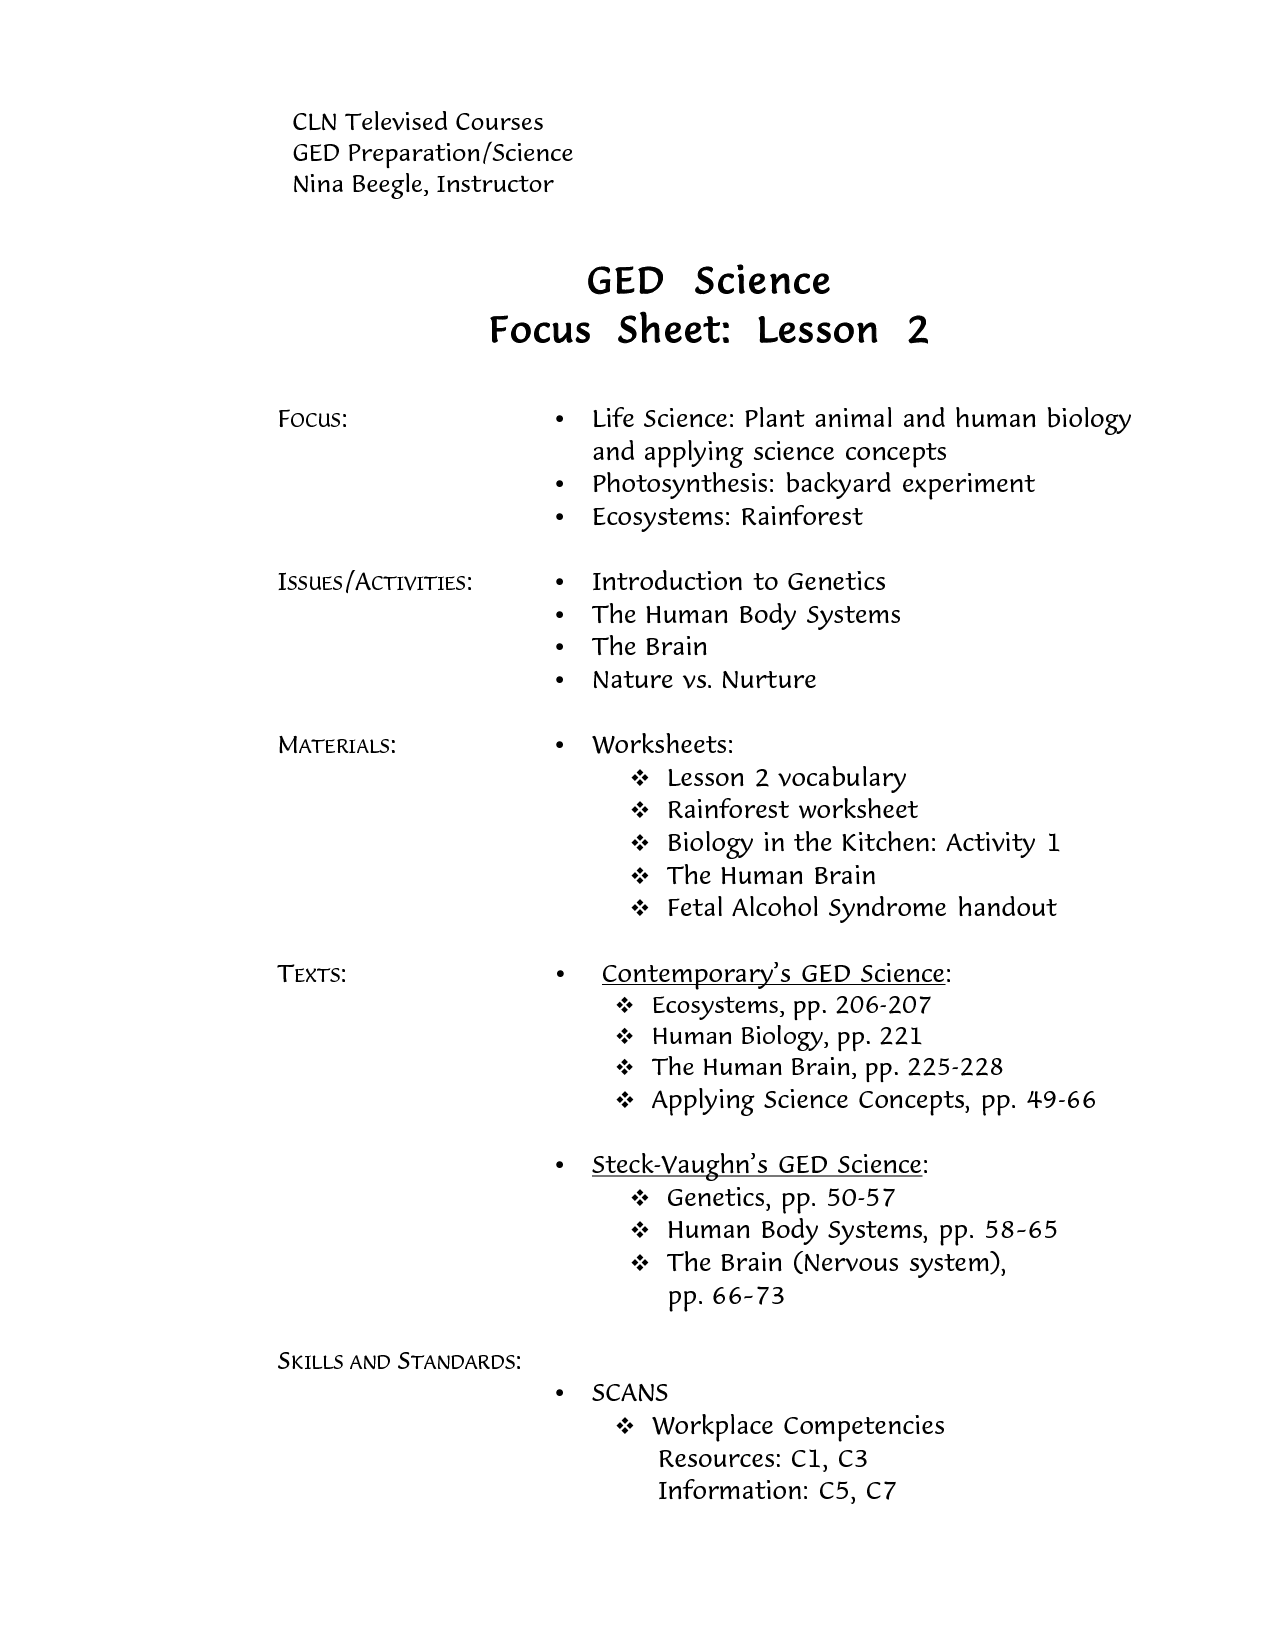 GED Science Printable Worksheets Image